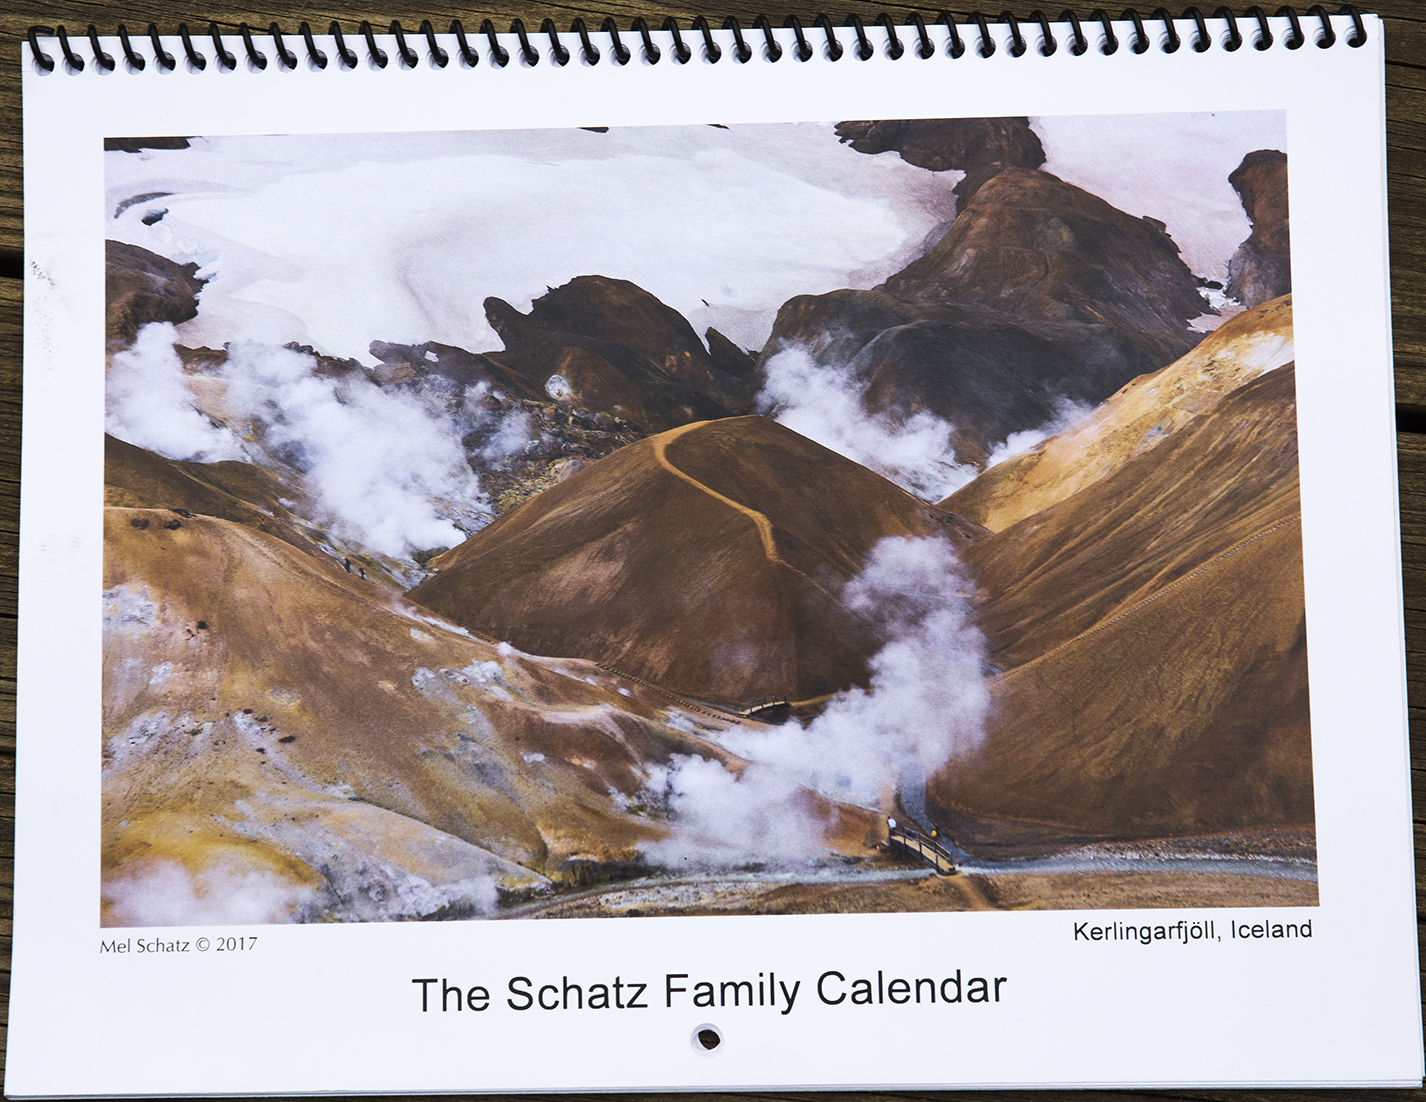 The Schatz Family Calendar